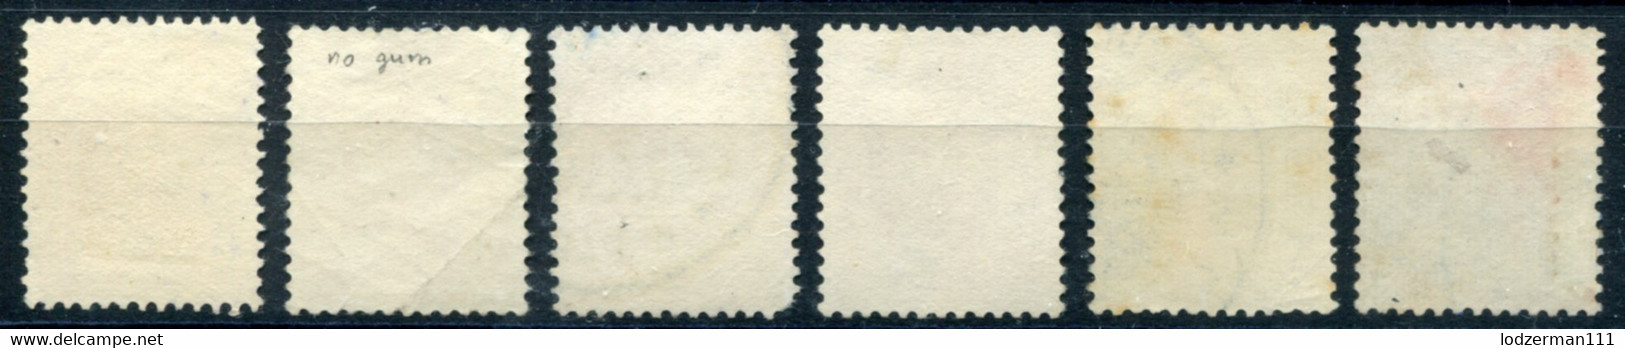 1937 Consular Fee - 6 Rare Stamps (mix) - Revenue Stamps